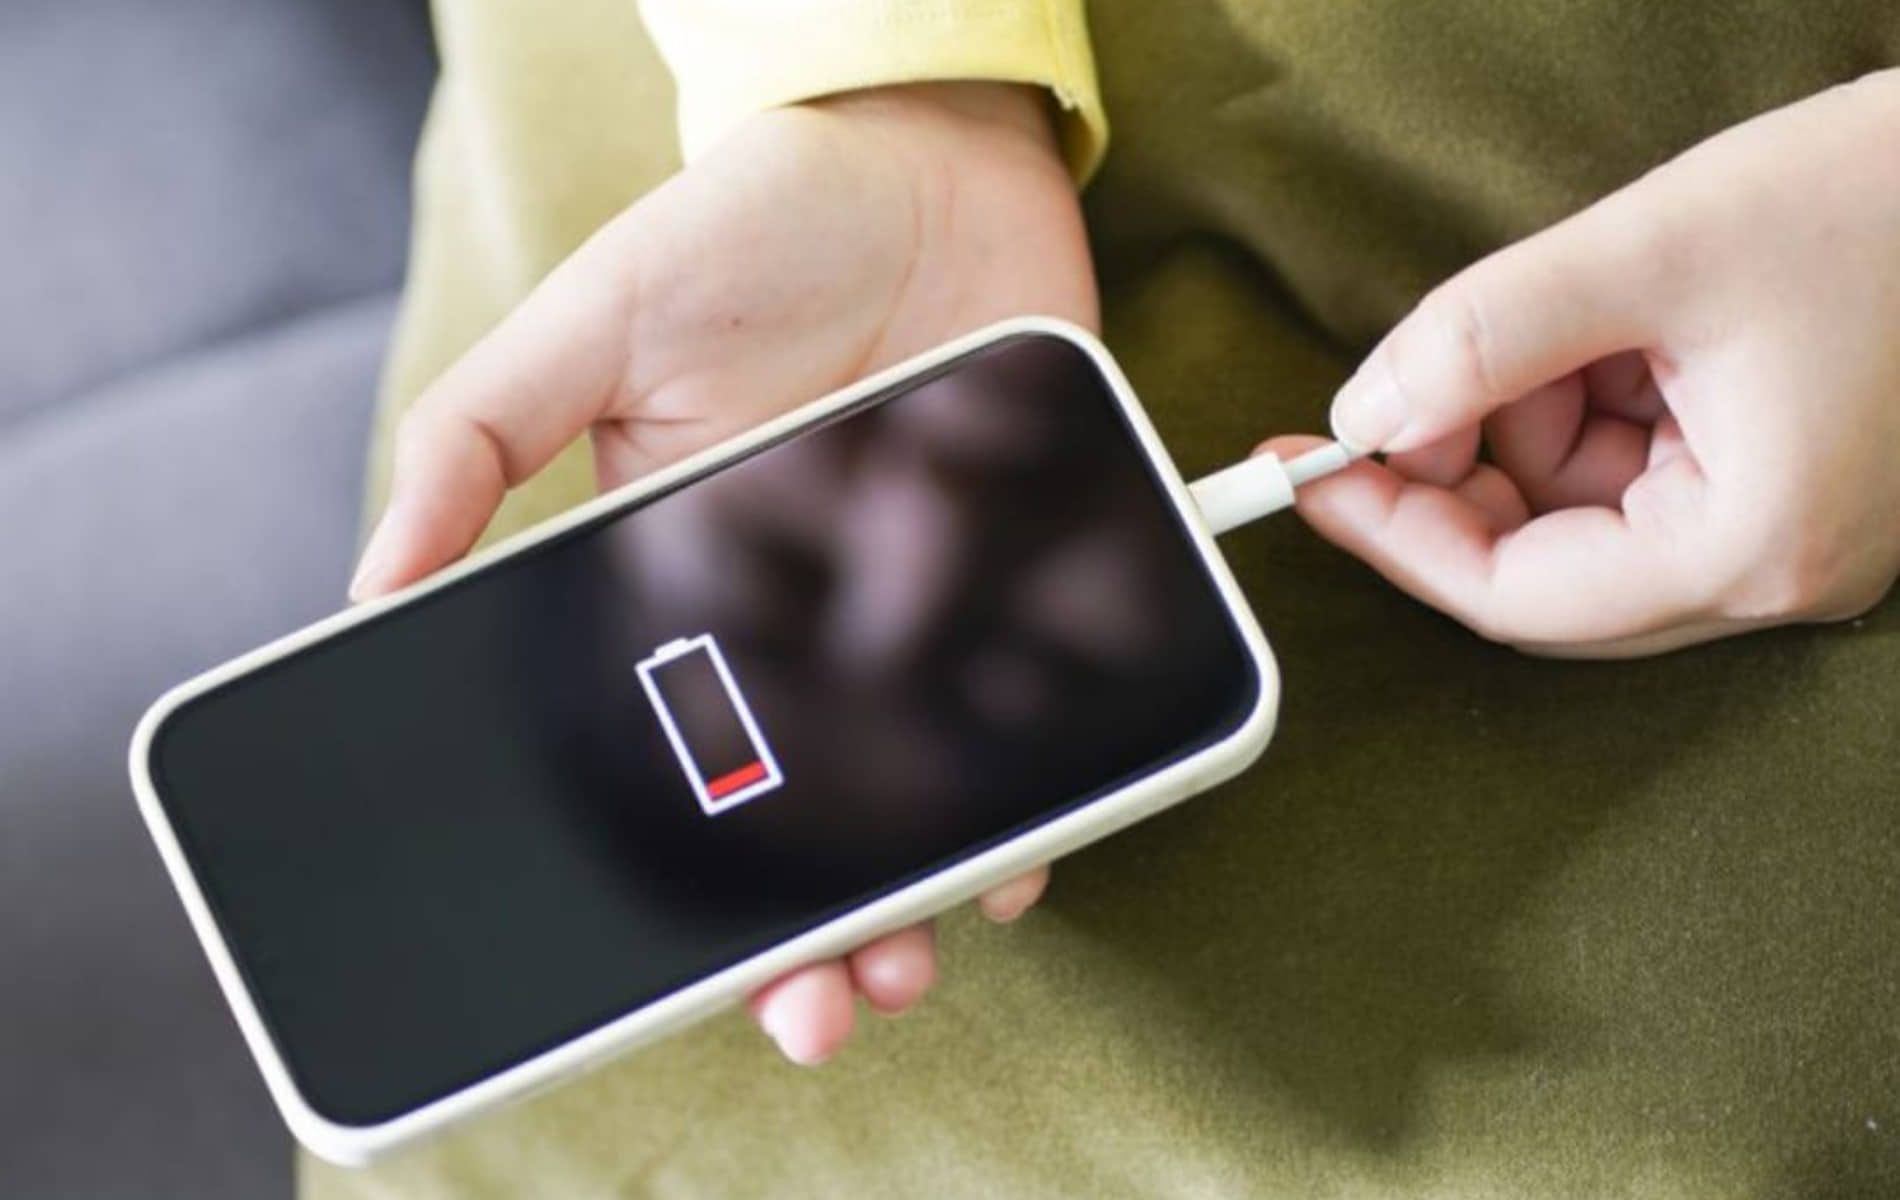 Simak tips agar baterai handphone bisa bertahan lama dan awet, diantaranya jangan mengisi daya baterai hingga penuh dan rutin clear cache